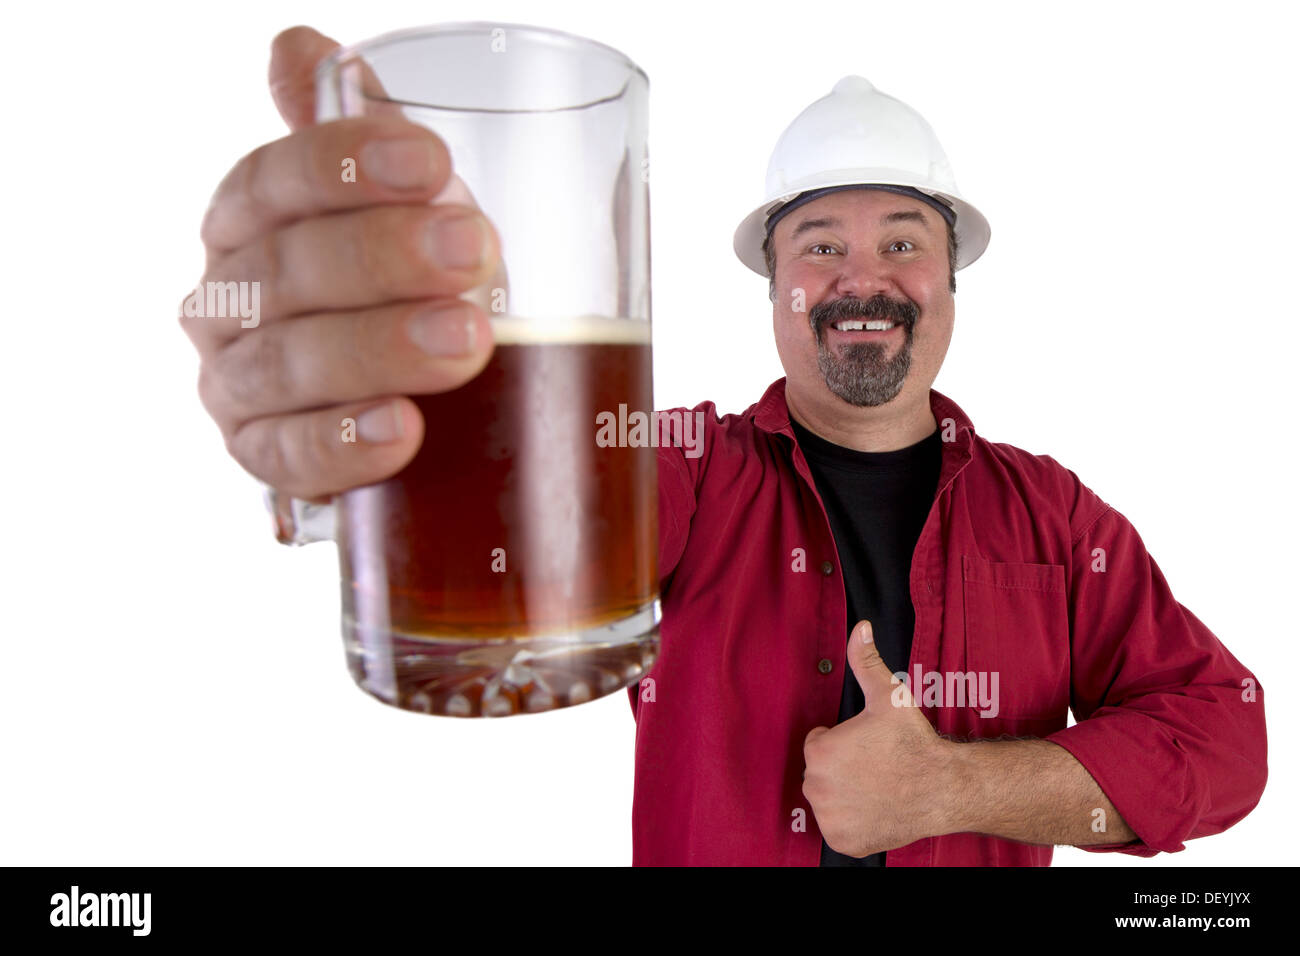 Felice di elmetto lavorando dando un pollice in alto, condividendo il suo bicchiere da birra, indossa una maglietta rossa lungo con il suo bianco elmetto Foto Stock